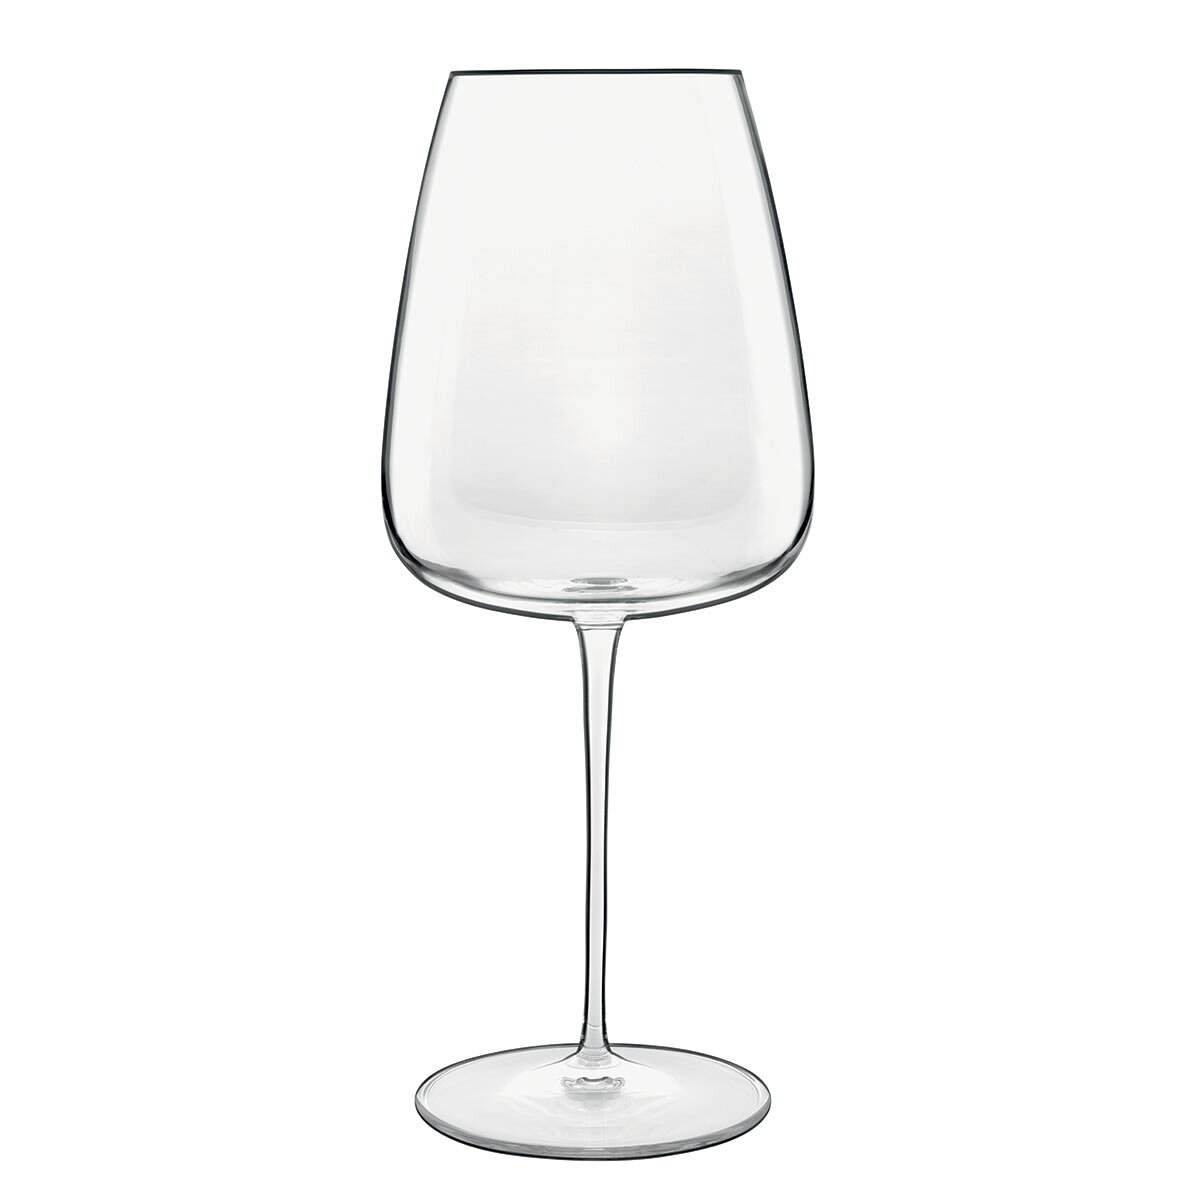 Luigi Bormioli Talismano Crystal Bordeaux Glasses, 700ml, 8 Pack